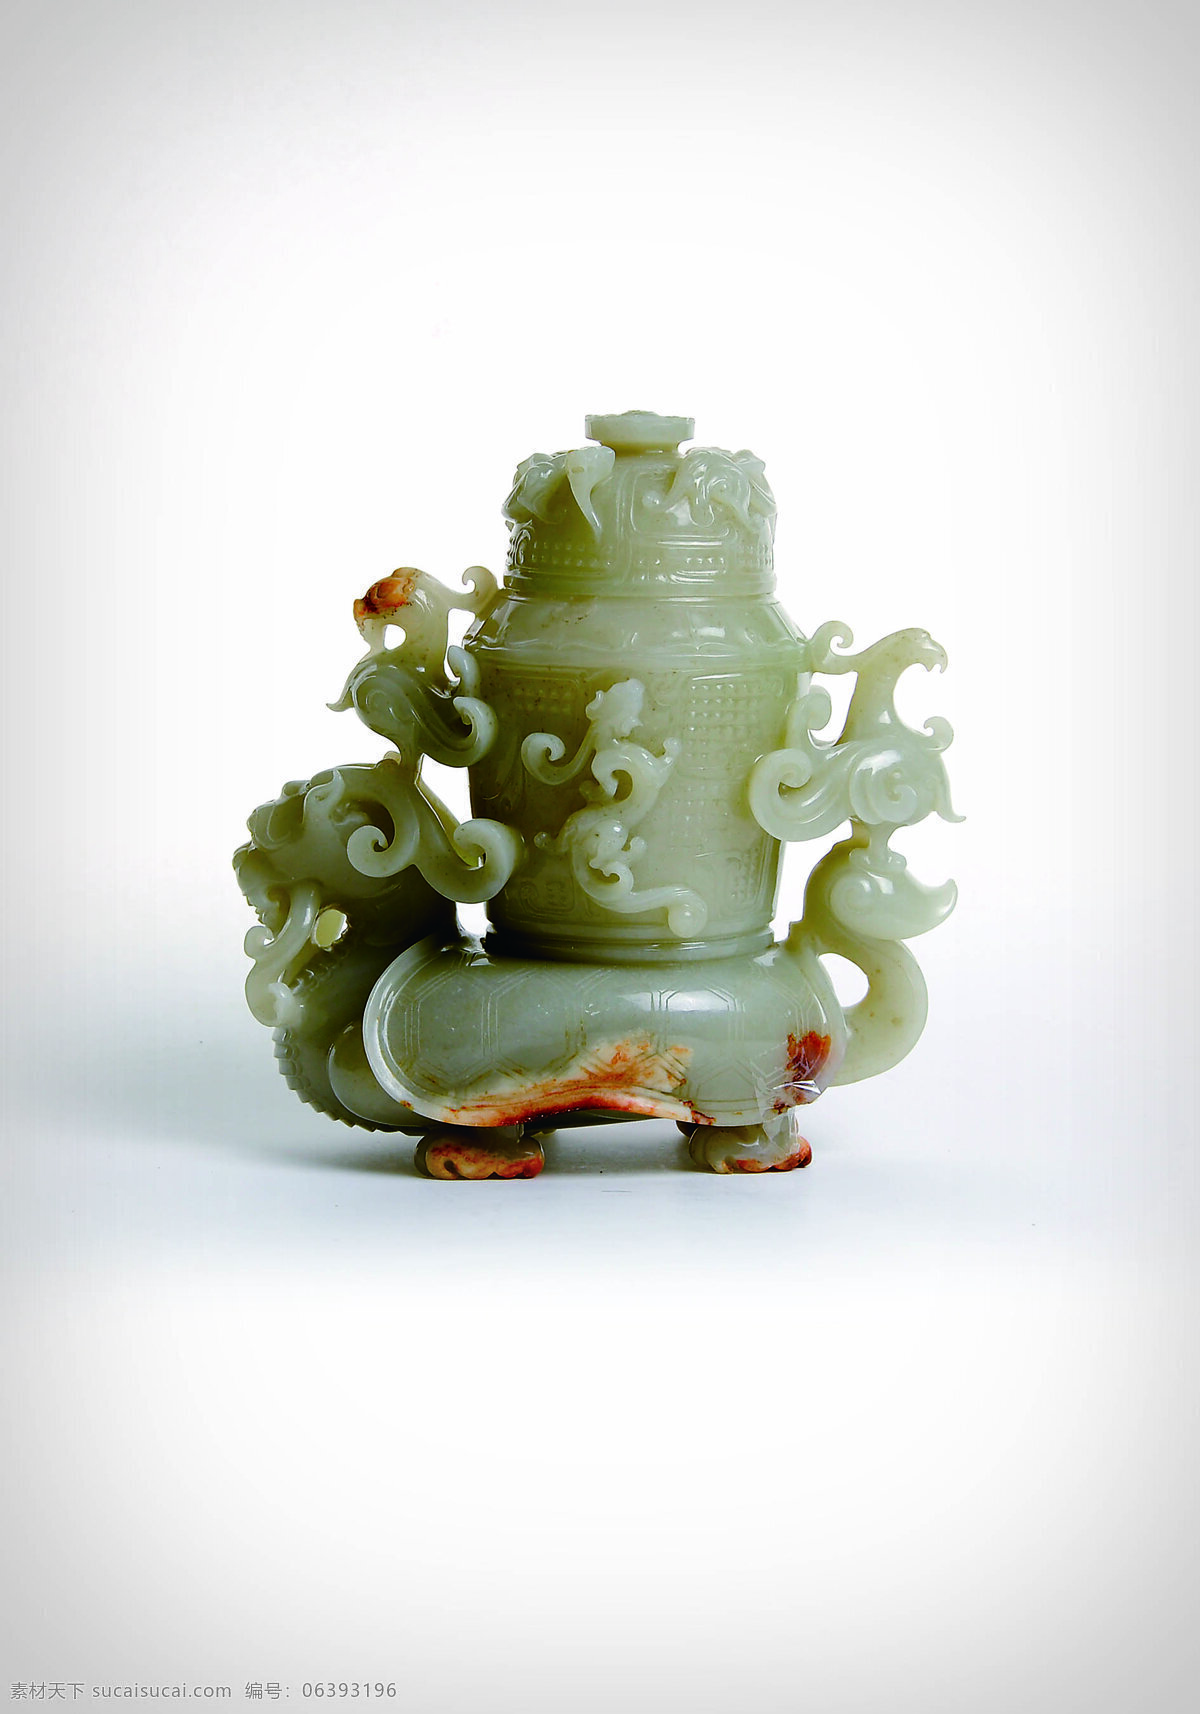 青玉 龟 龙 座 盖 瓶 玉器 古董 艺术品 和田玉 青海玉 传统文化 文化艺术